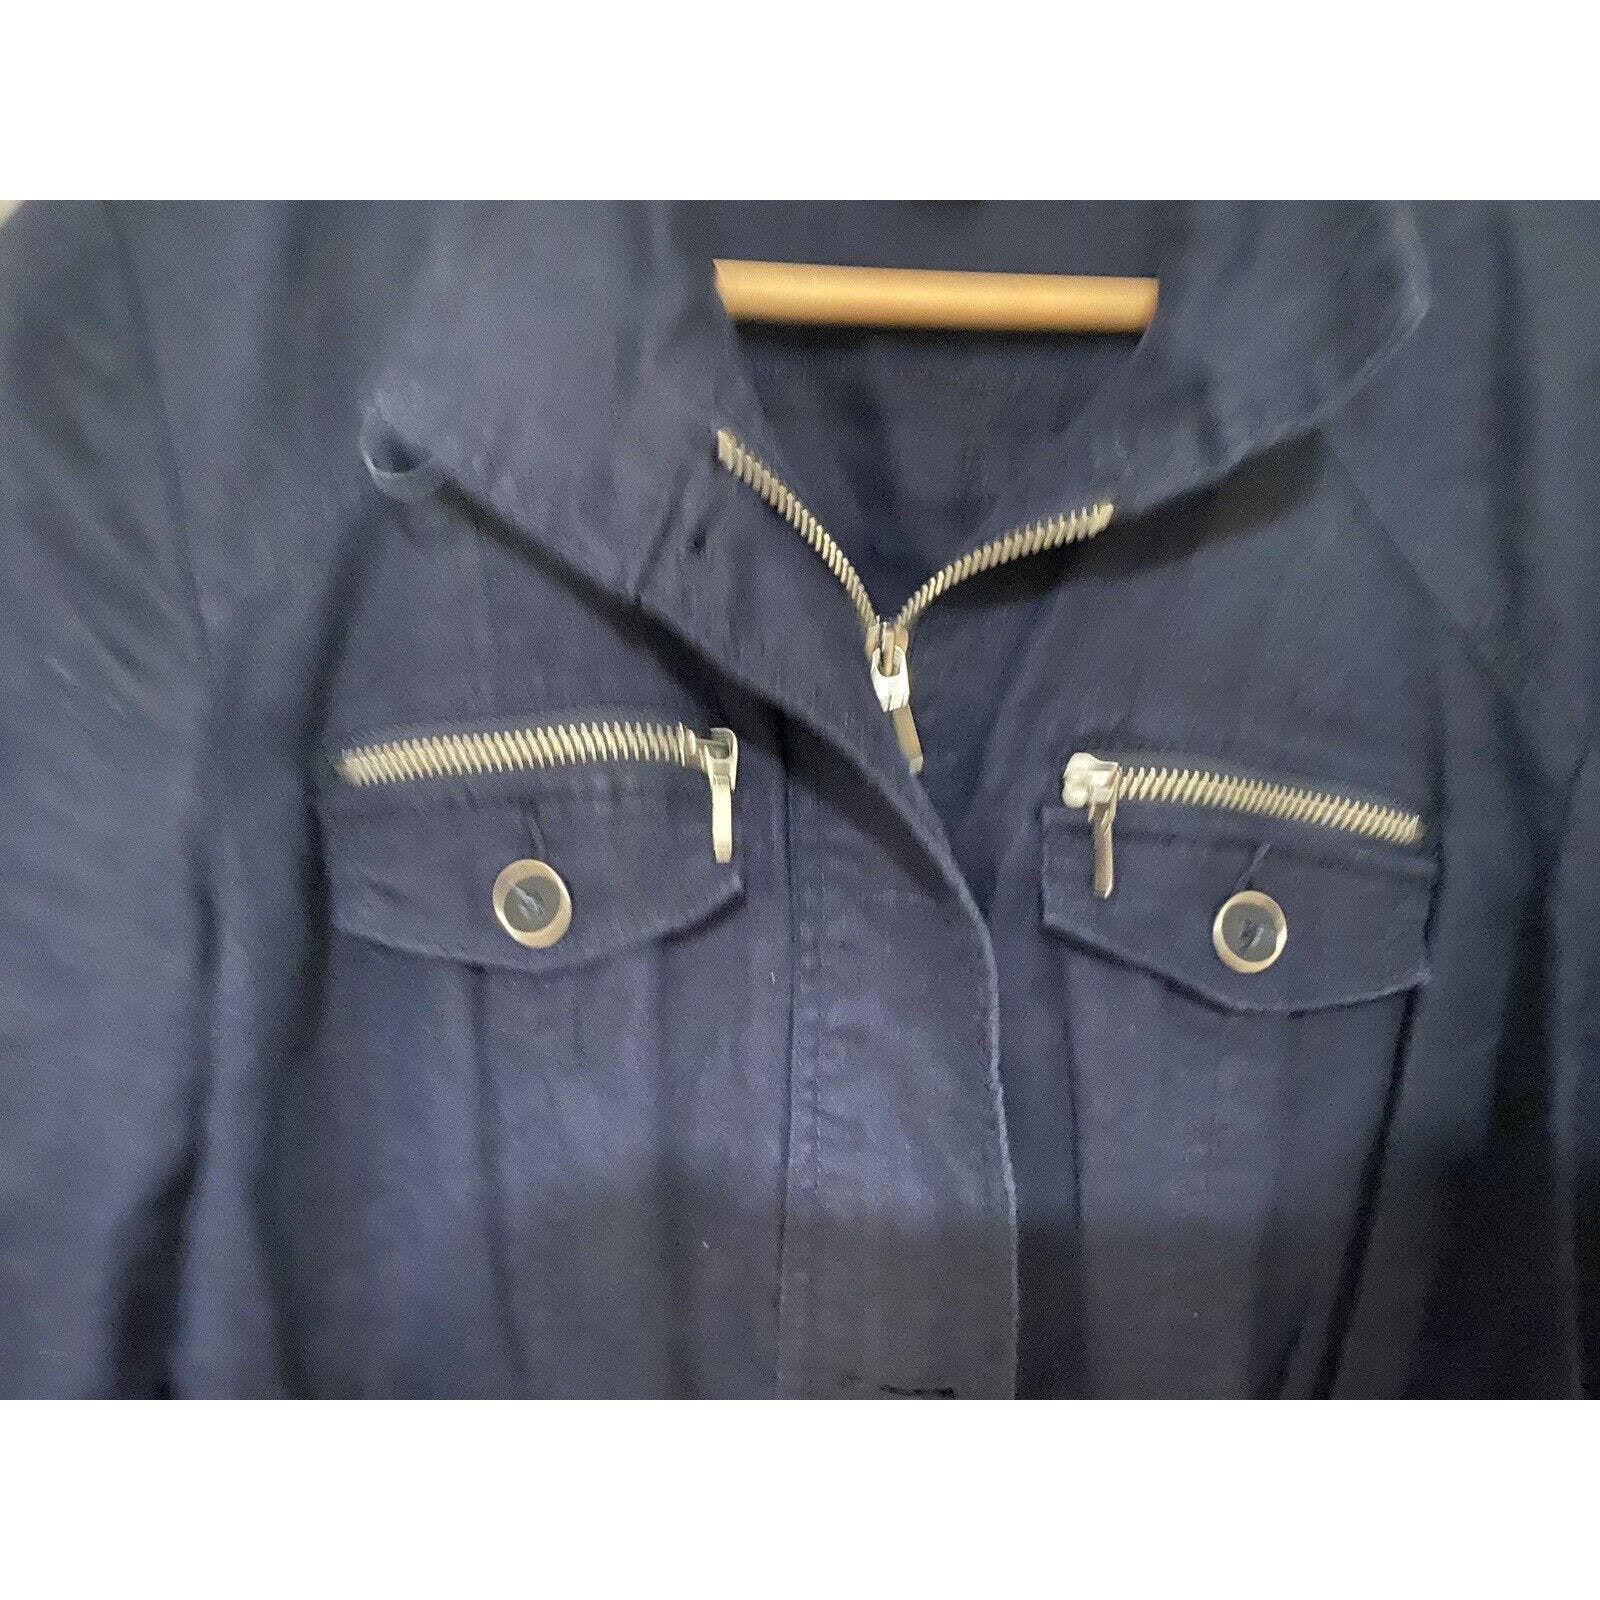 Inc INC Concepts Jacket Women Sz Med Button Up Coat Blue Linen Size M / US 6-8 / IT 42-44 - 2 Preview